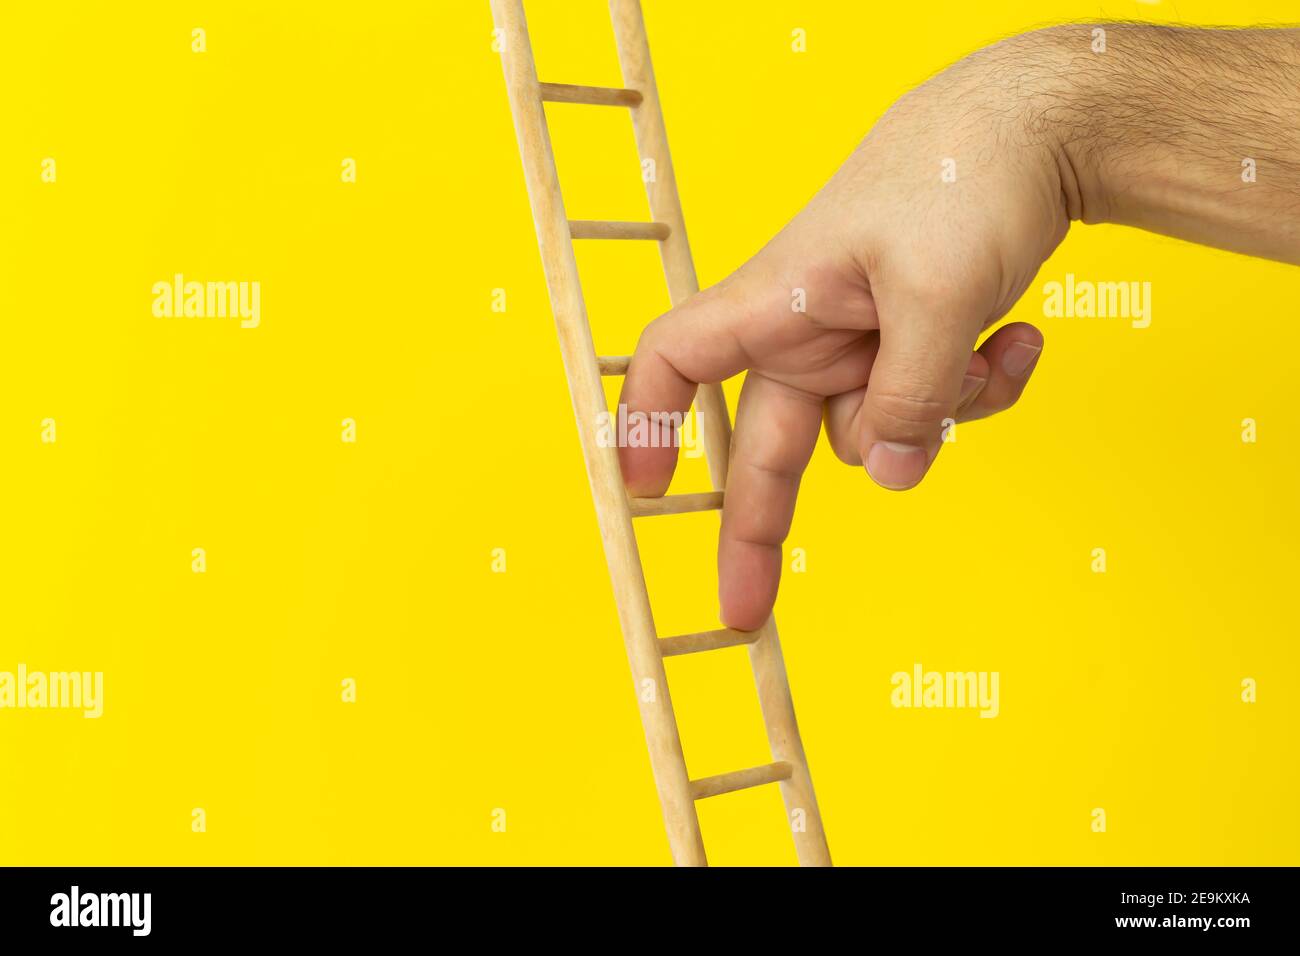 Persönliche Entwicklung, Karriereentwicklung und Führungskonzept. Männliche Finger klettern oben auf gelbem Hintergrund Stockfoto